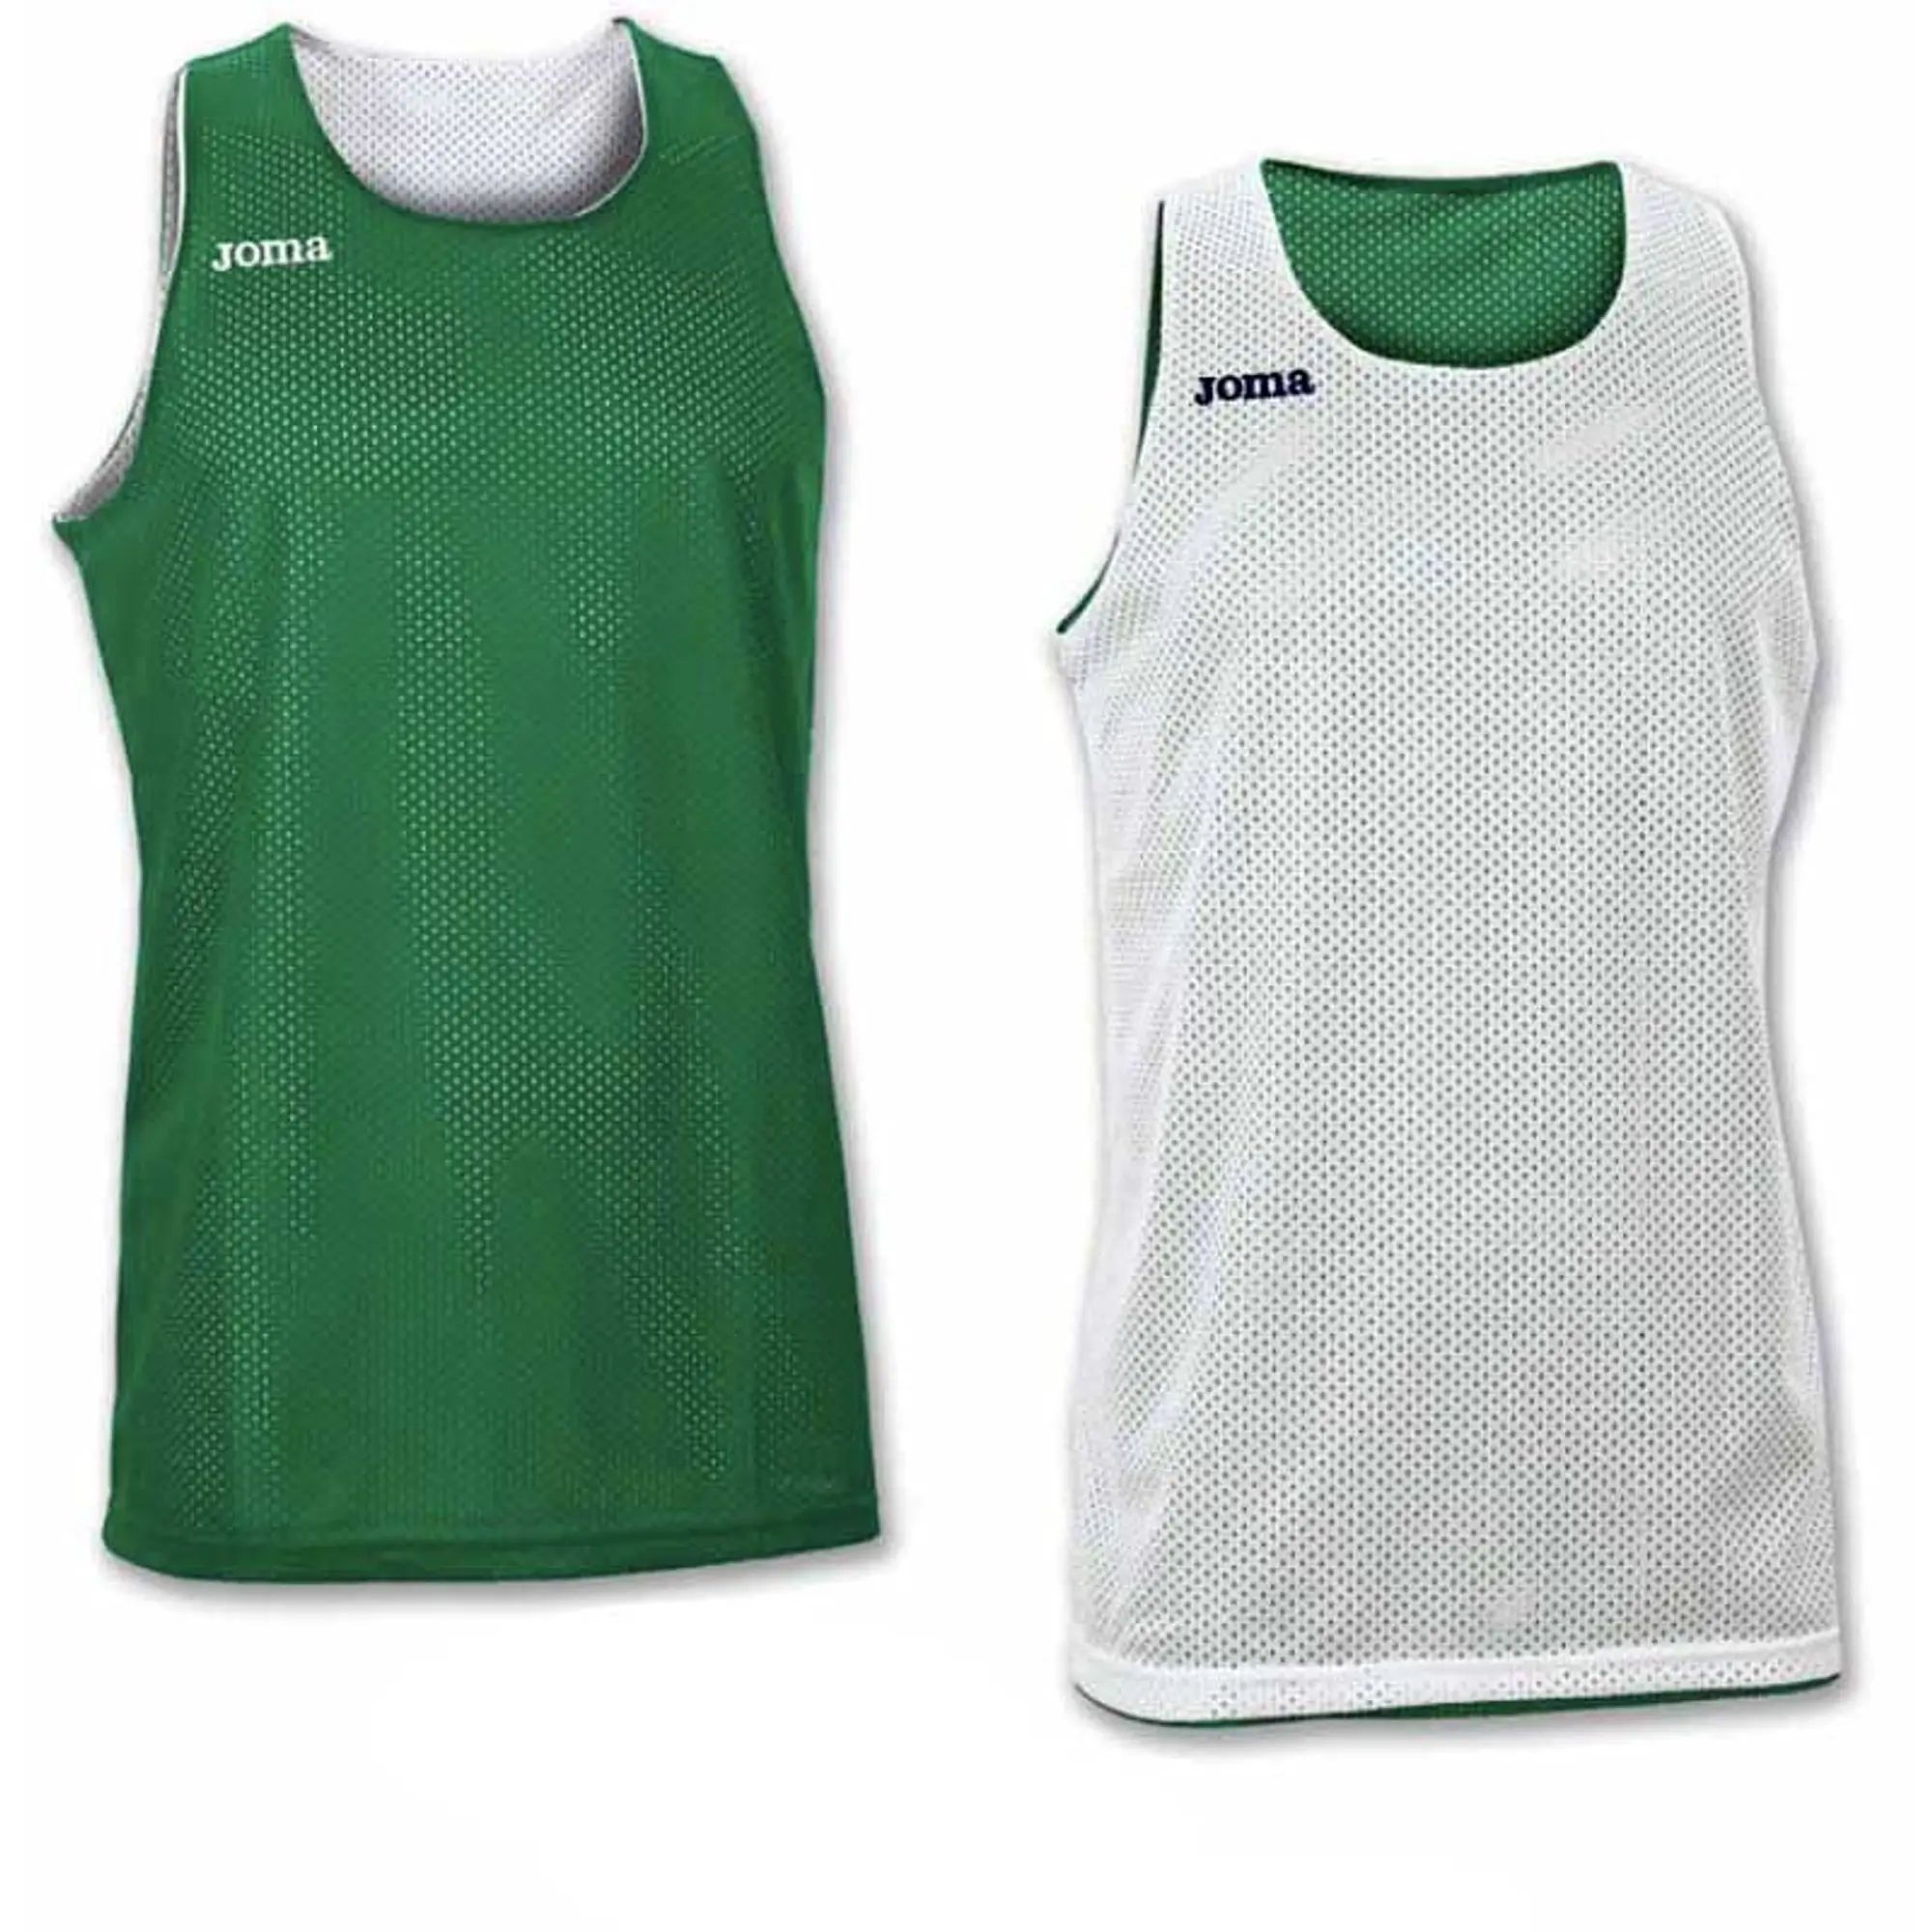 Joma Aro Reversible Sleeveless T-shirt  - Green,White